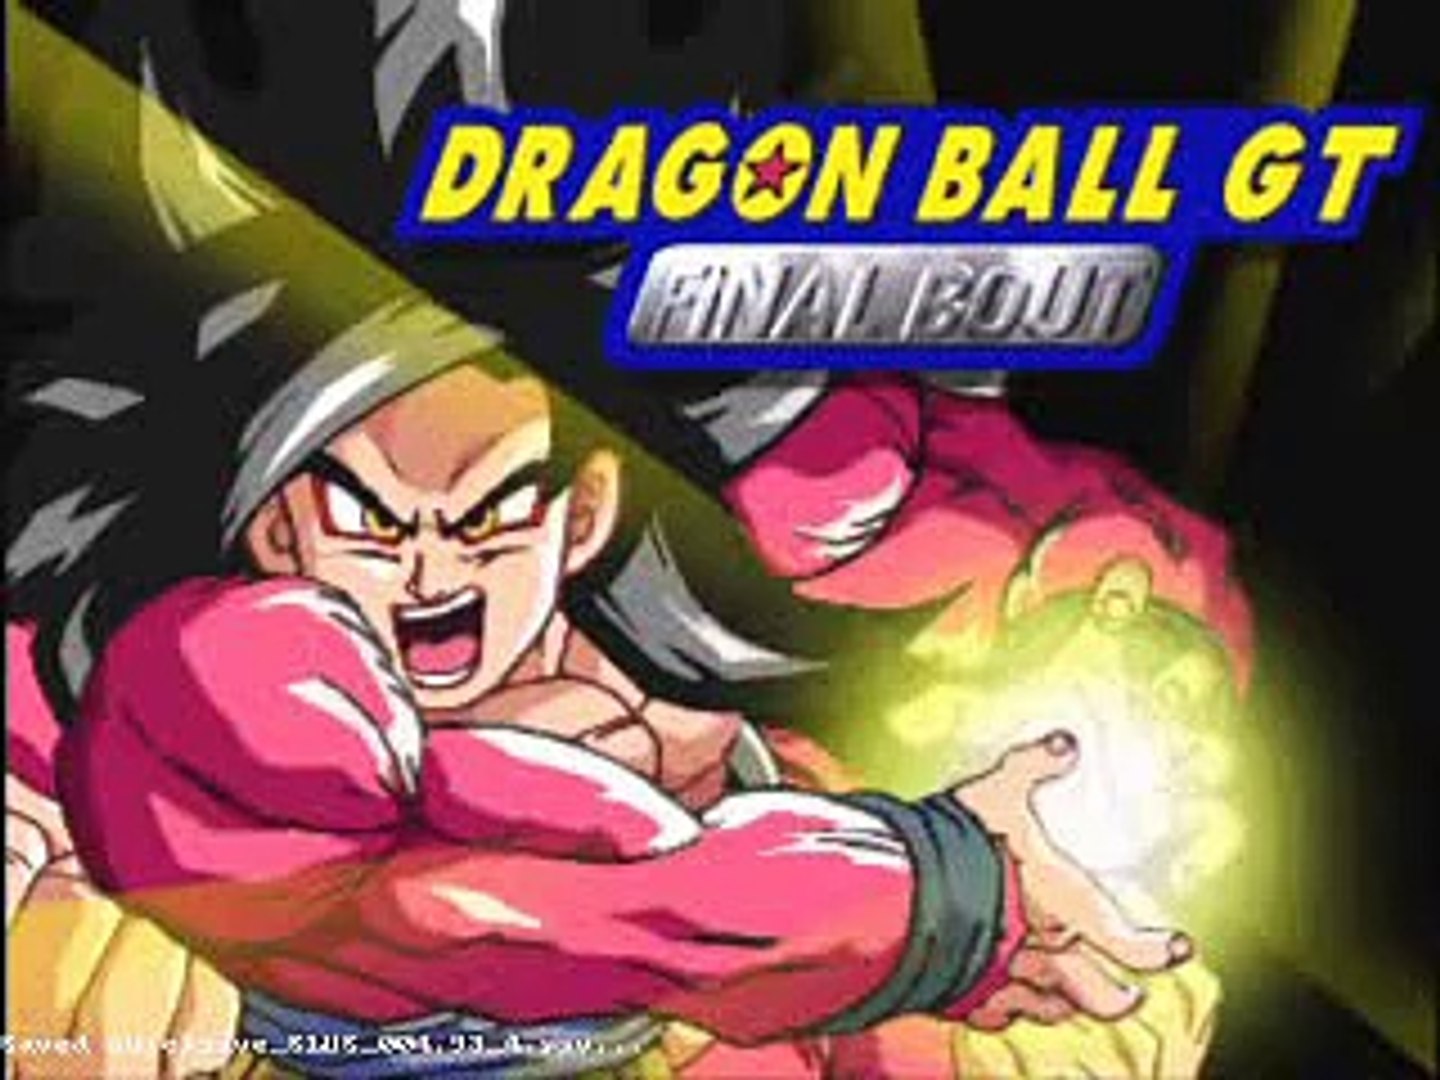 Dragon balls final. Dragon Ball gt Final bout ps1. Dragon Ball gt Final bout. Dragon Ball Final Remastered Gods. Титульный экран в Dragon Ball gt: Final bout.